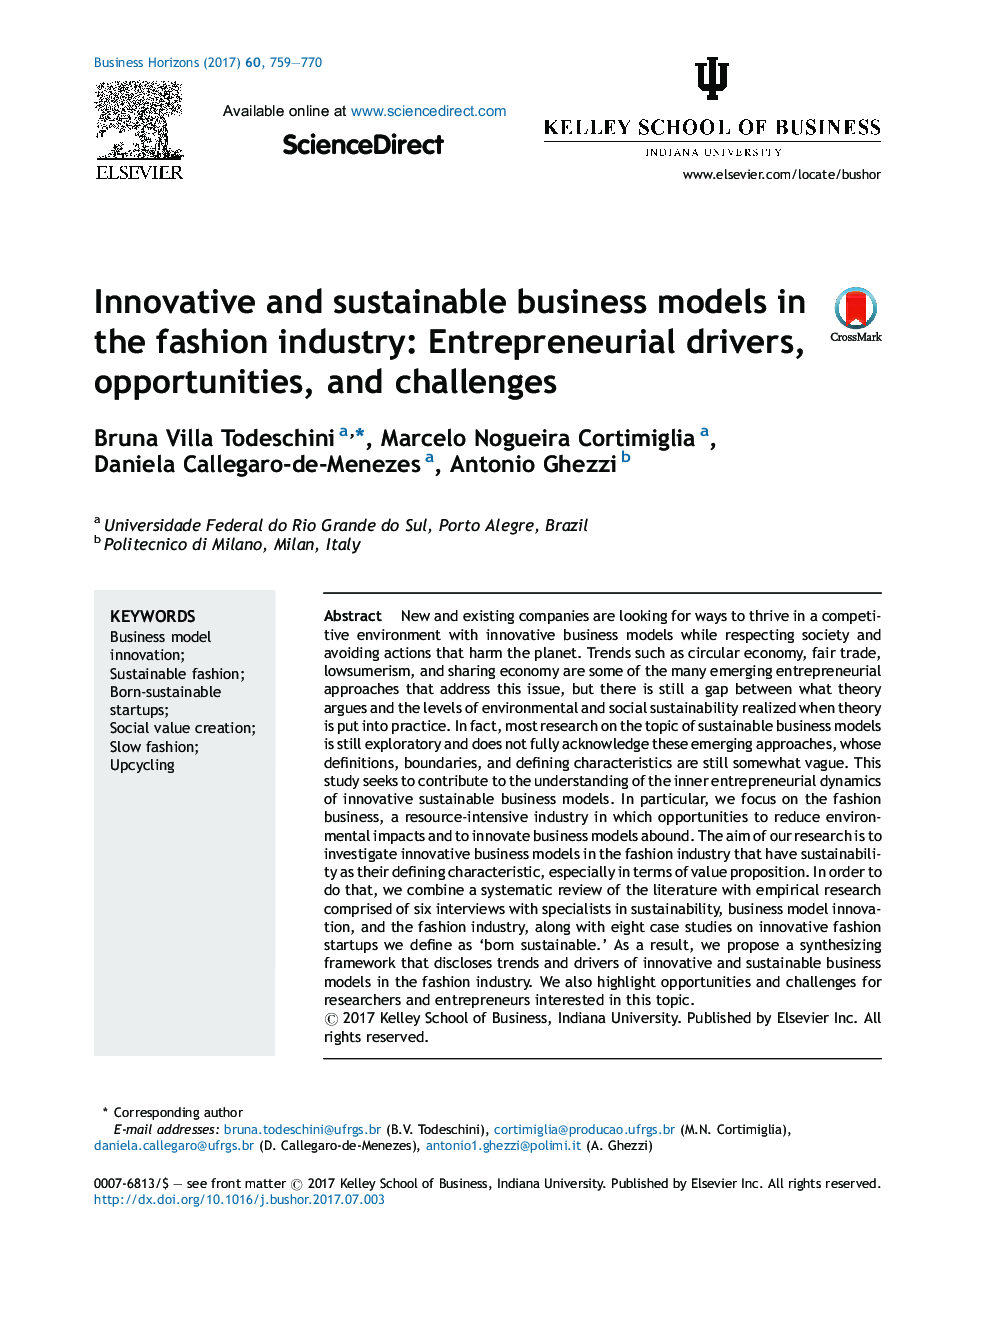 مدل های نوآورانه و پایدار کسب و کار در صنعت مد: رانندگان کارآفرینی، فرصت ها و چالش ها 